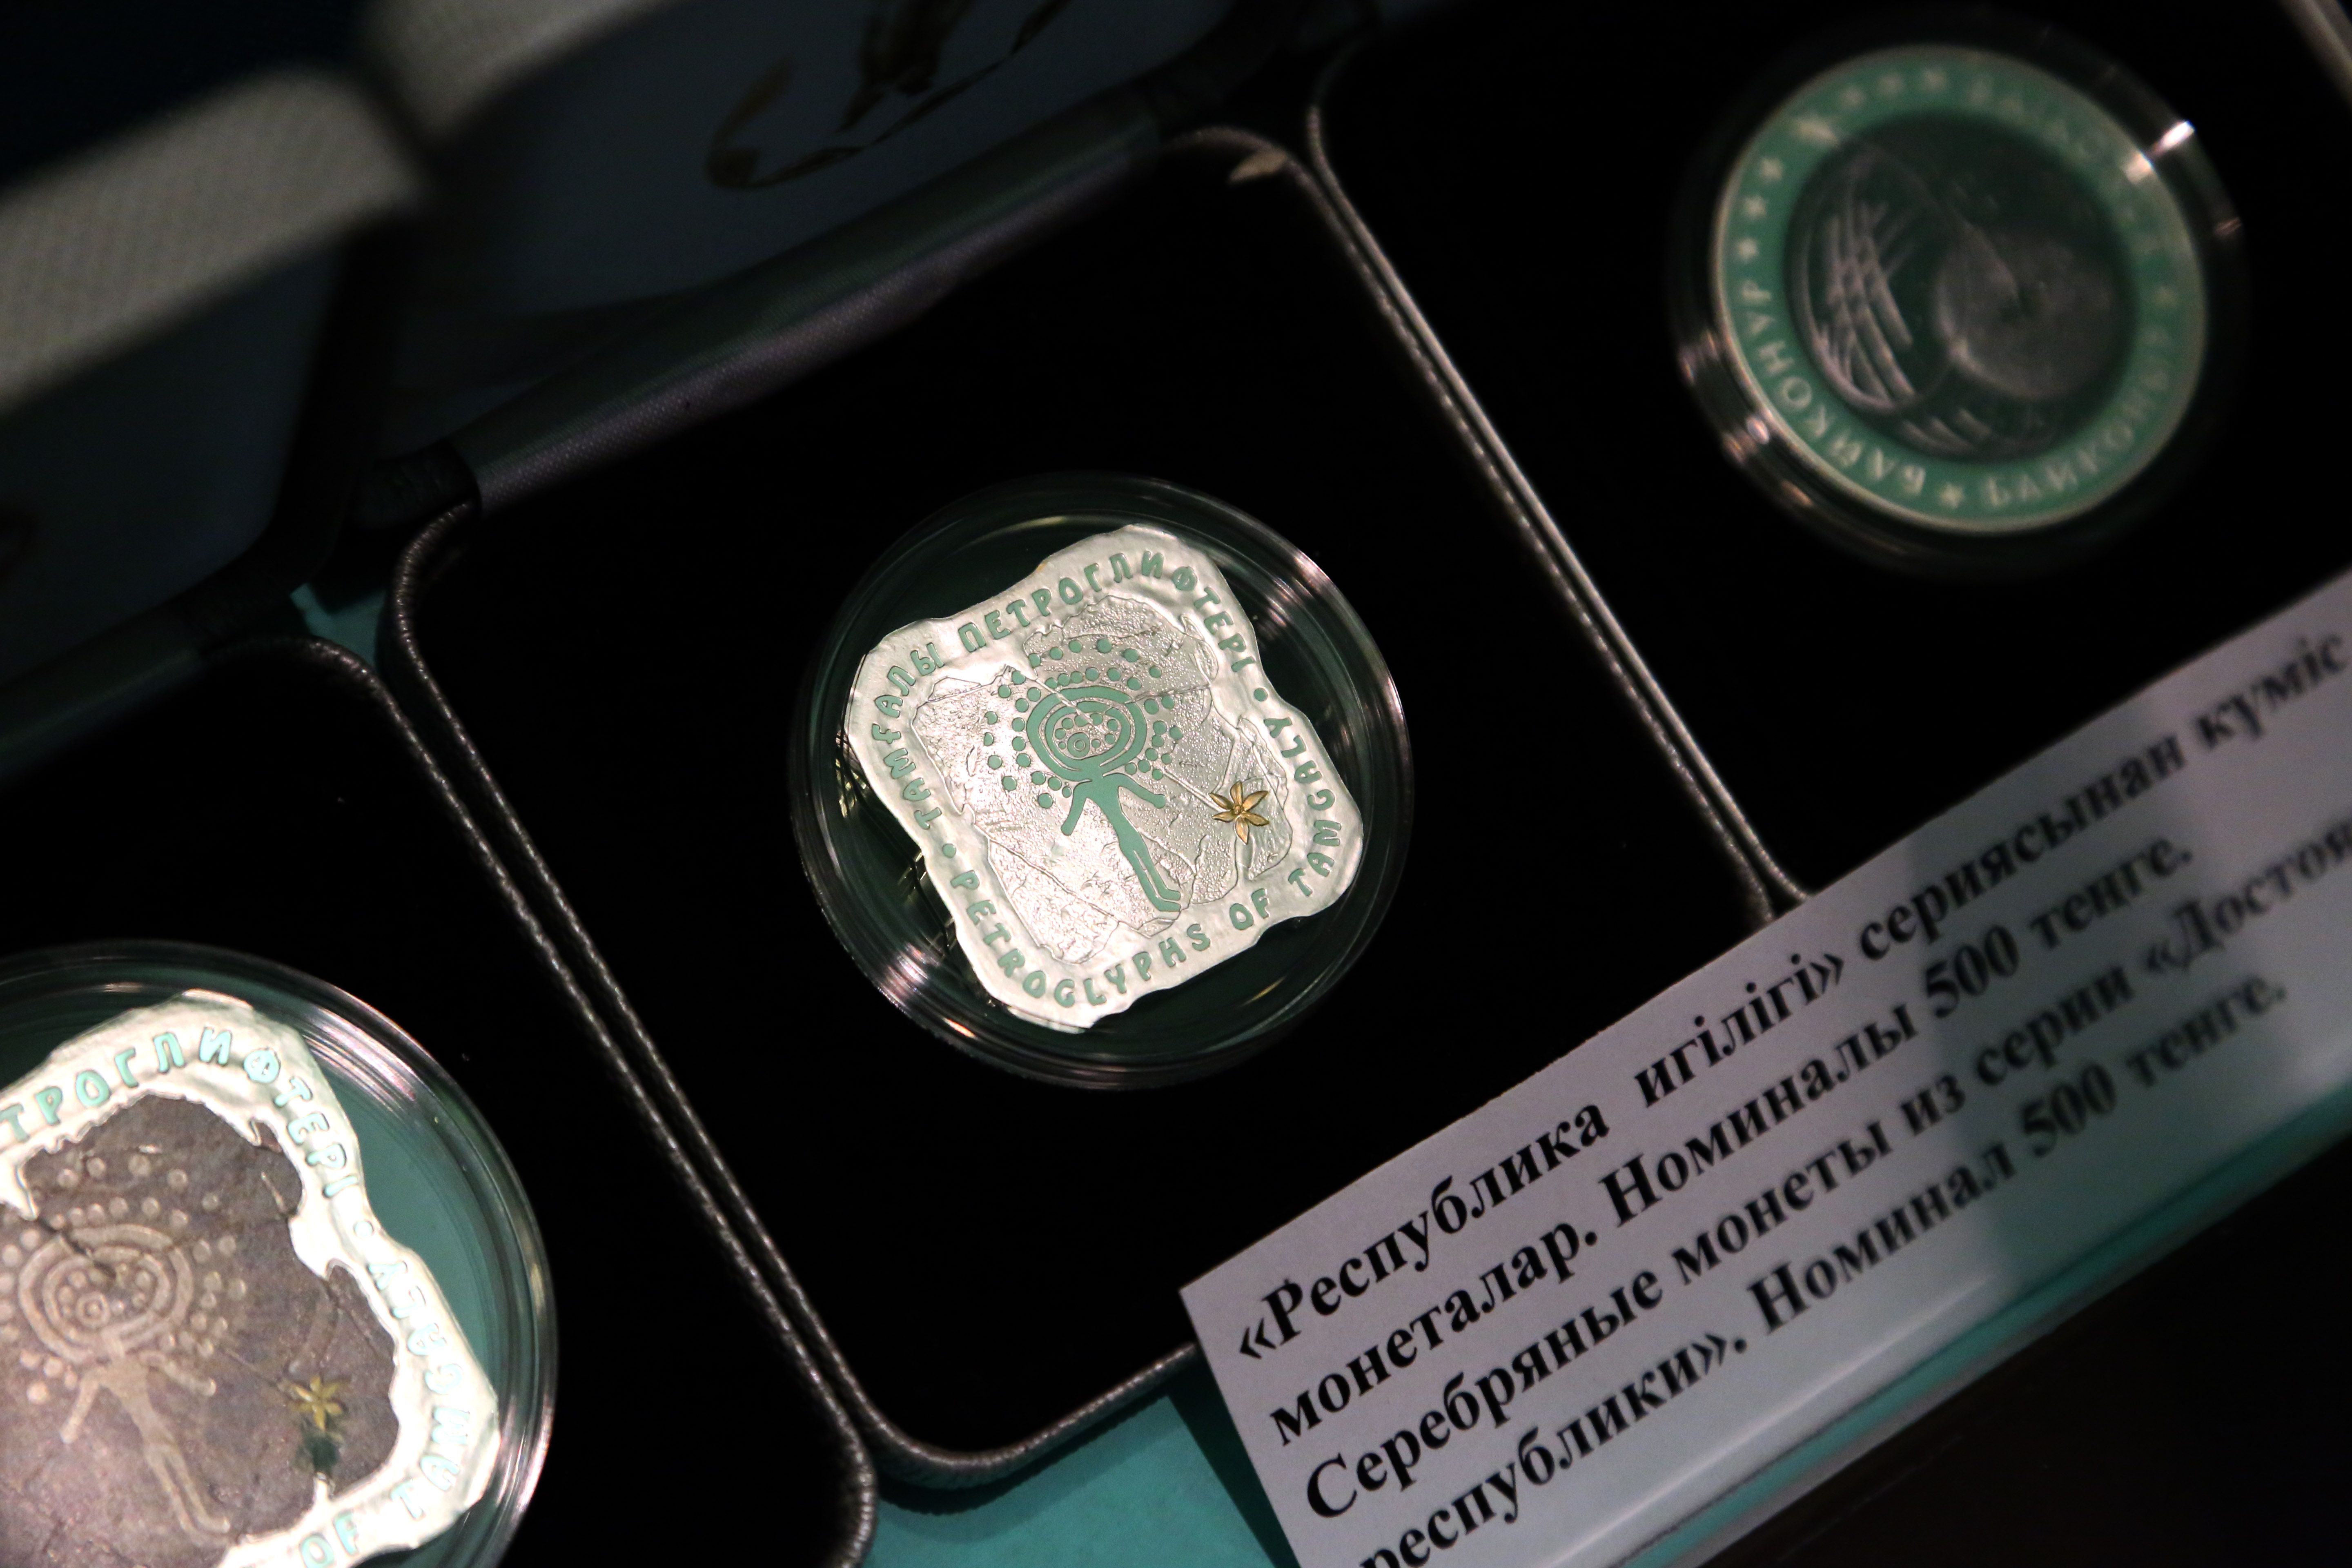 Самая первая серия золотых монет «Шелковый путь» была выпущена Национальным банком РК в 1995 году. В дальнейшем были эмитированы монеты, посвященные 1500-летию древнего города Туркестан, уникальному историческому памятнику - «Человек в золотой одежде».Первая серия серебряных монет, выпущенных Национальным банком РК, была посвящена 150-летию со дня рождения великого просветителя казахского народа Абая Кунанбаева. Эти монеты носят такие названия как «Ана», «Медресе», «Беркутчи», «Махаббат» и «Кош». Благодаря оригинальному дизайну и национальному колориту эти монеты были реализованы полностью и за короткий срок.